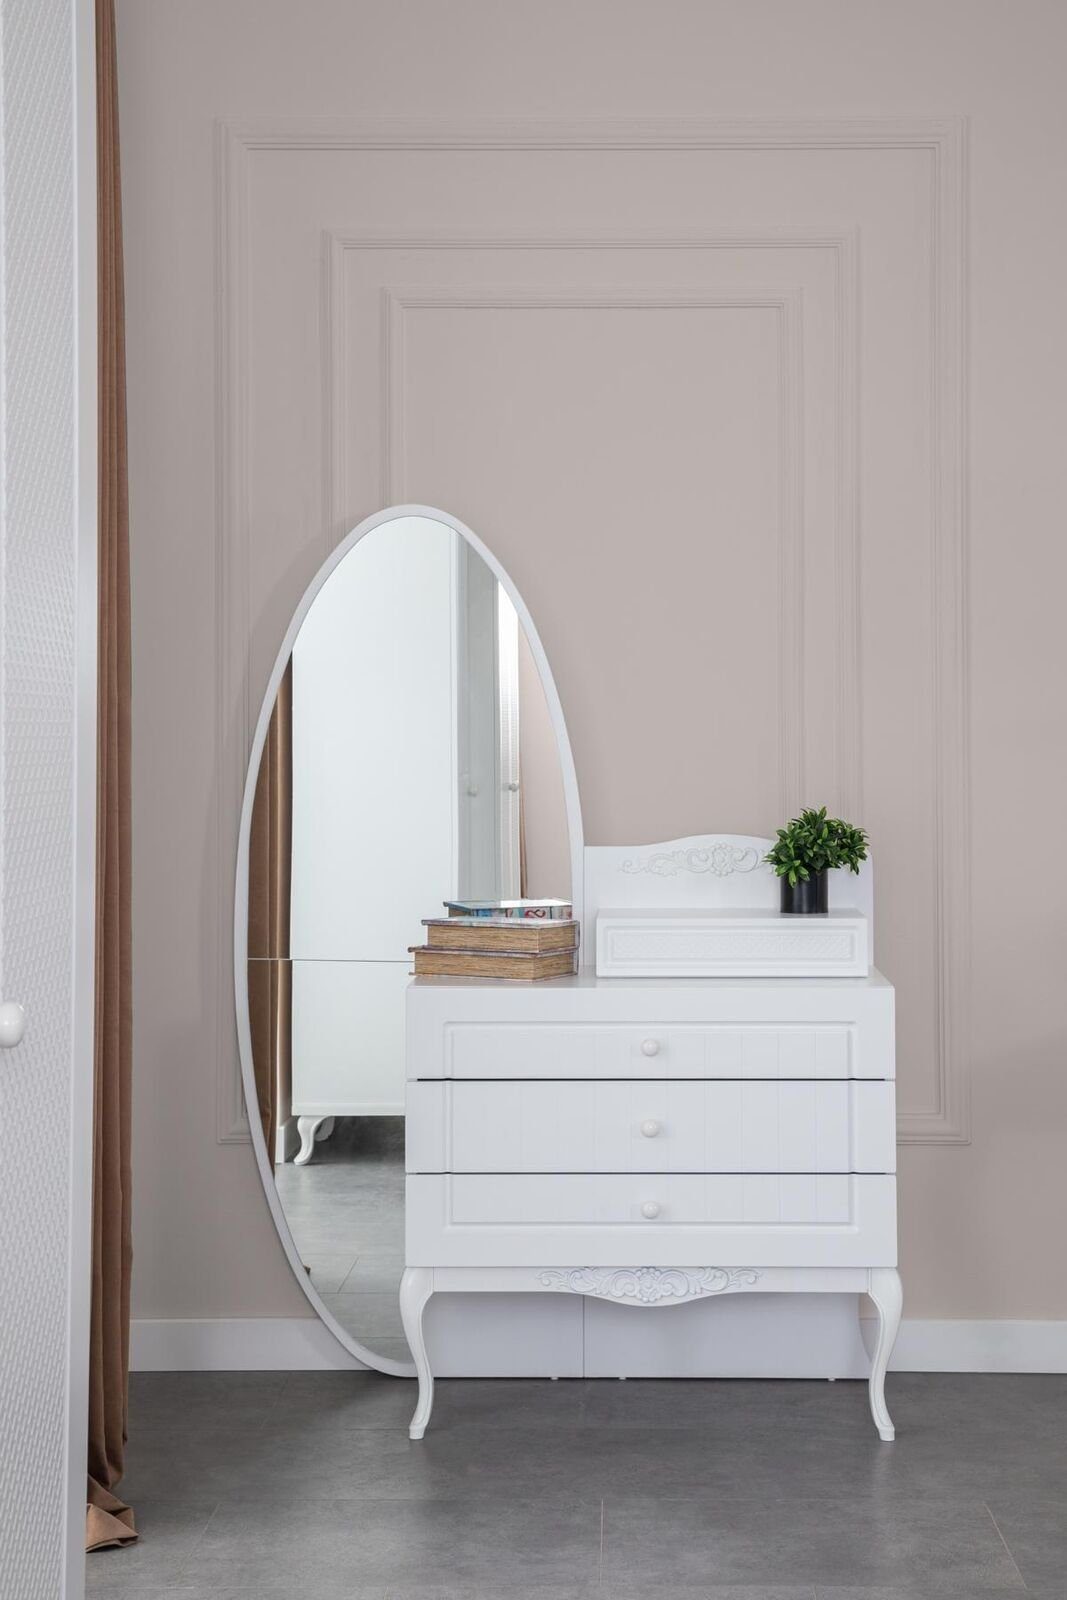 JVmoebel mit Möbel Farbe Spiegel Kommode Kommode Holz Design Weiße Jugendzimmer Neu